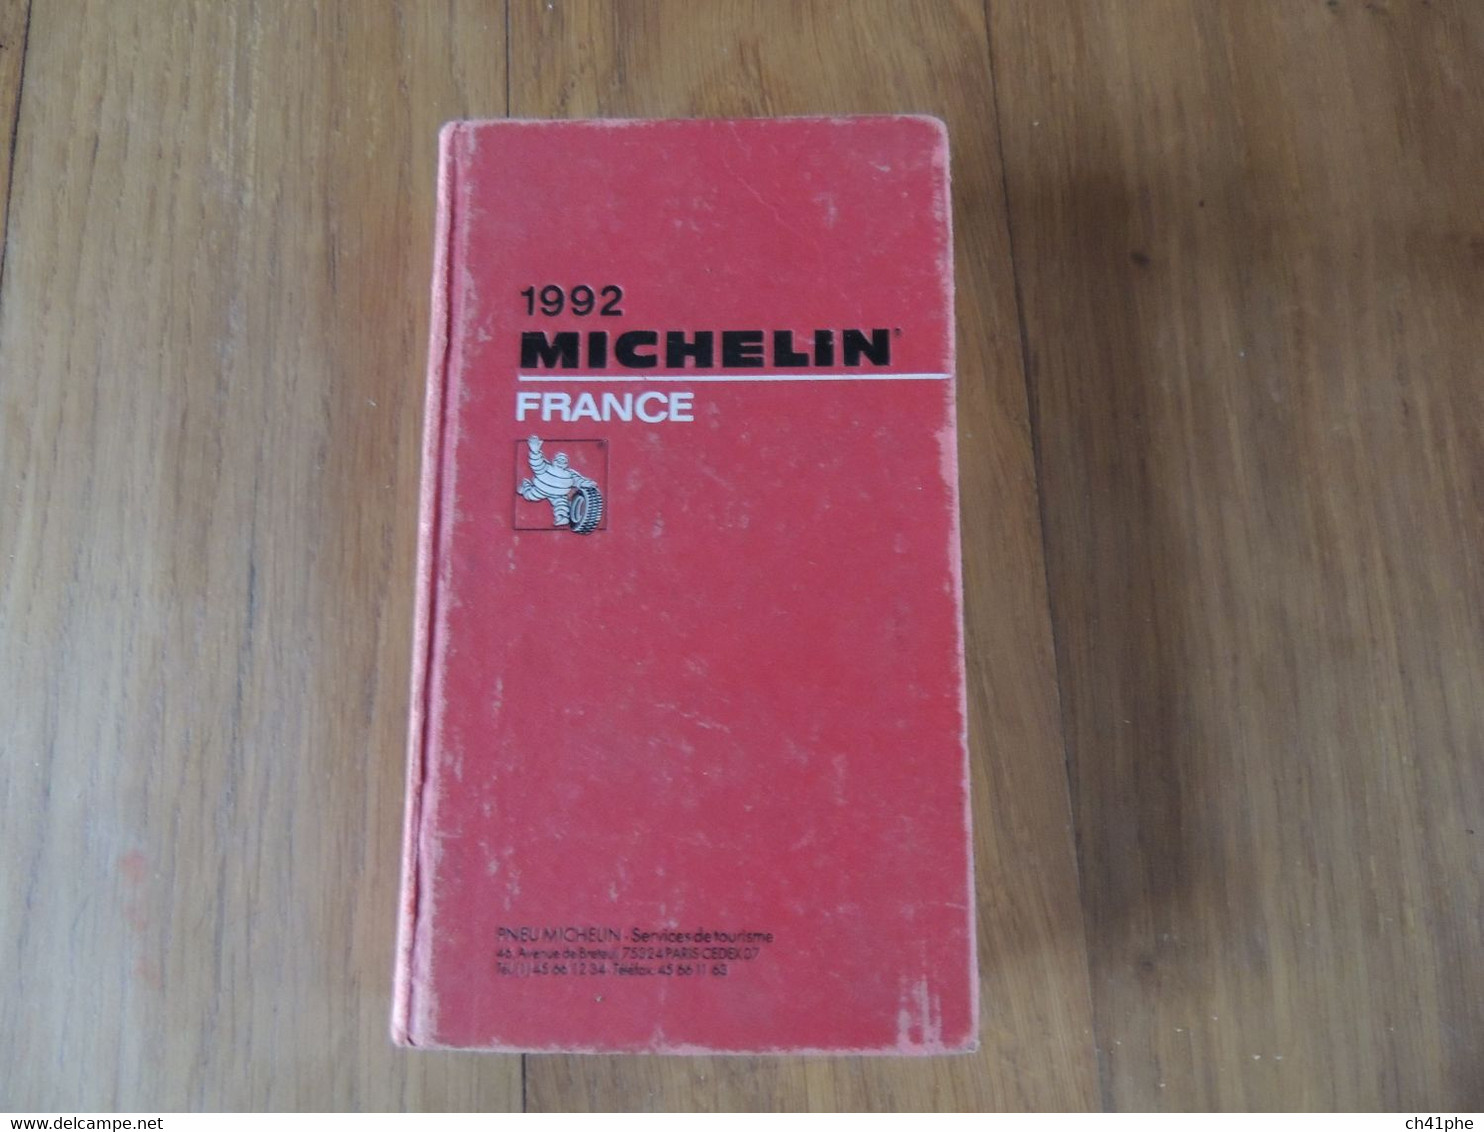 3 GUIDES MICHELIN DE 1977 - 1992 - 1998 - GUIDE MICHELIN - VOIR DETAIL - Michelin (guias)